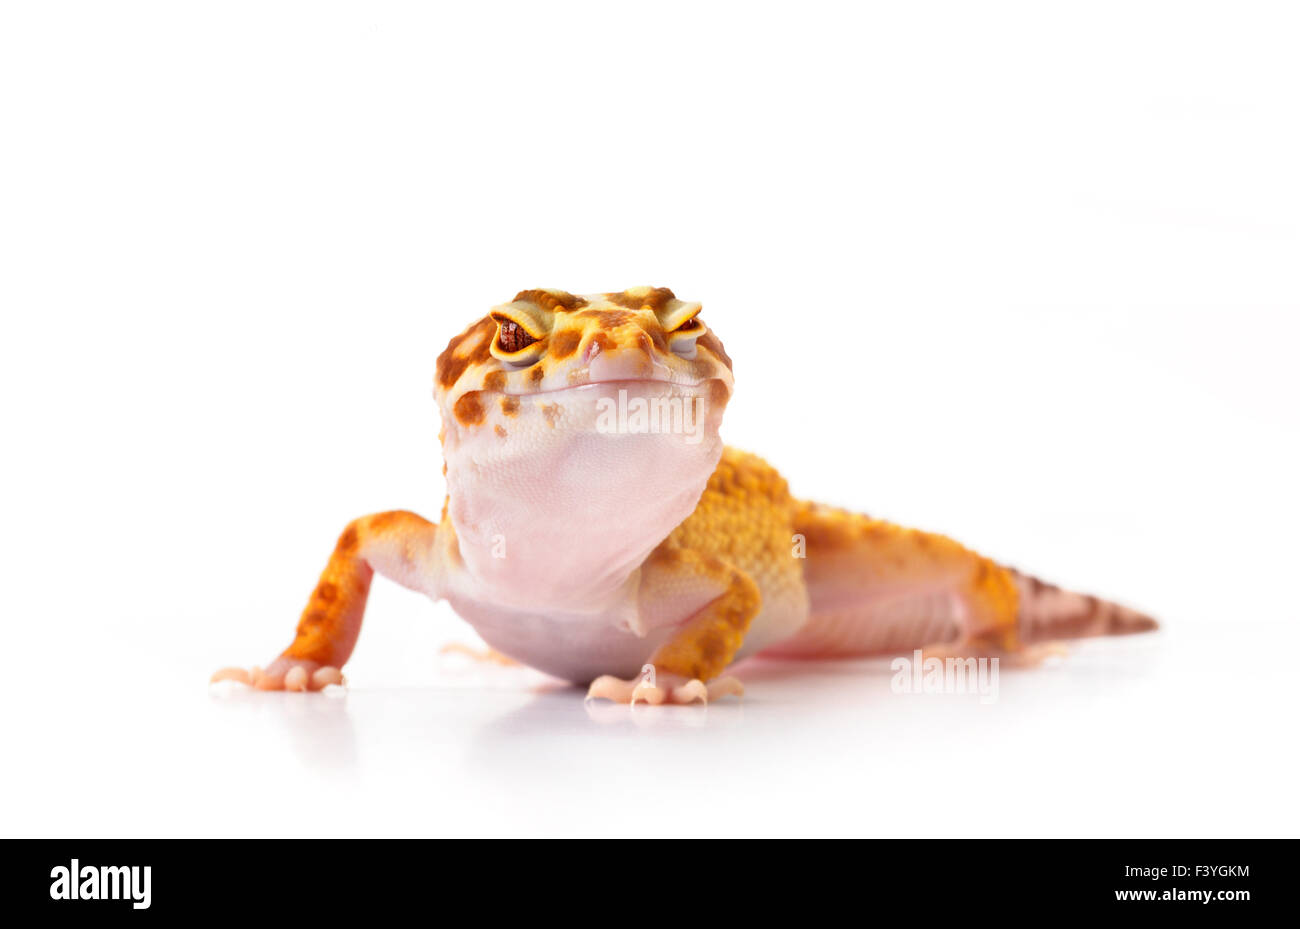 Gecko on white background Stock Photo